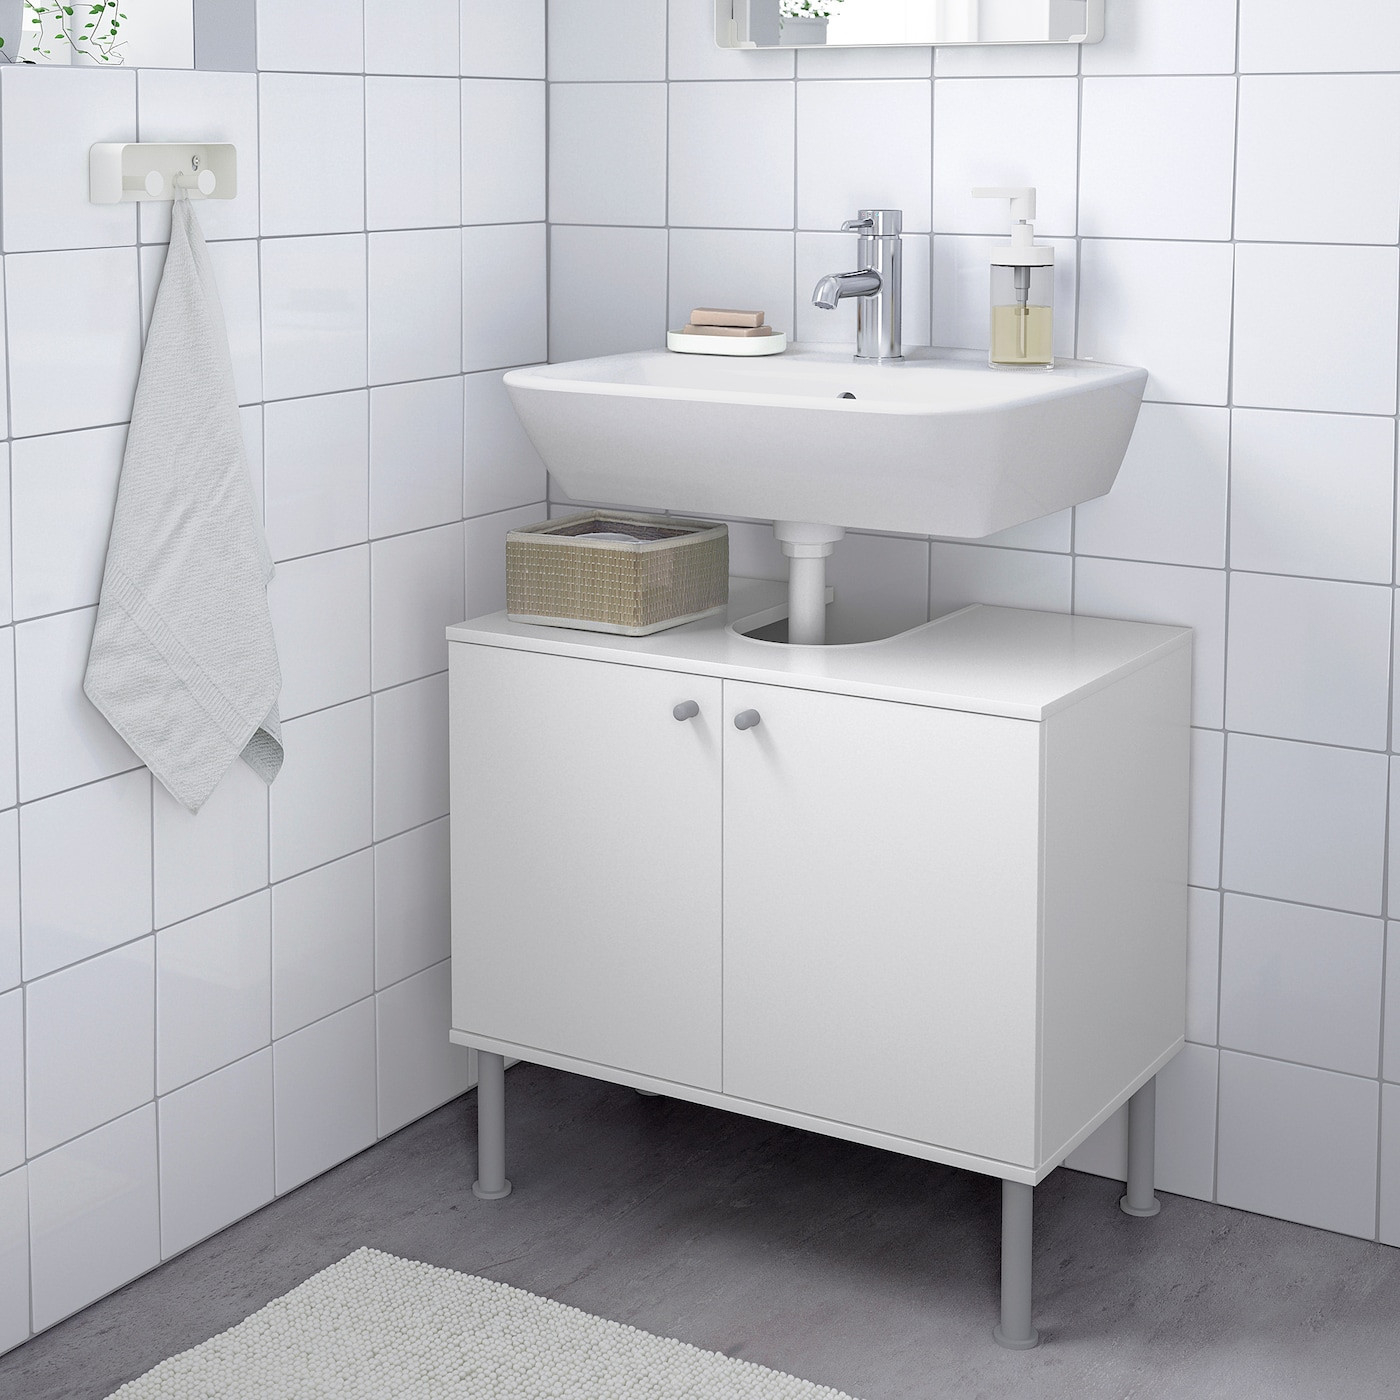 Fullen Waschbeckenunterschrank, 2 Türen - Weiß 60X55 Cm throughout Badezimmerschrank Unter Lavabo